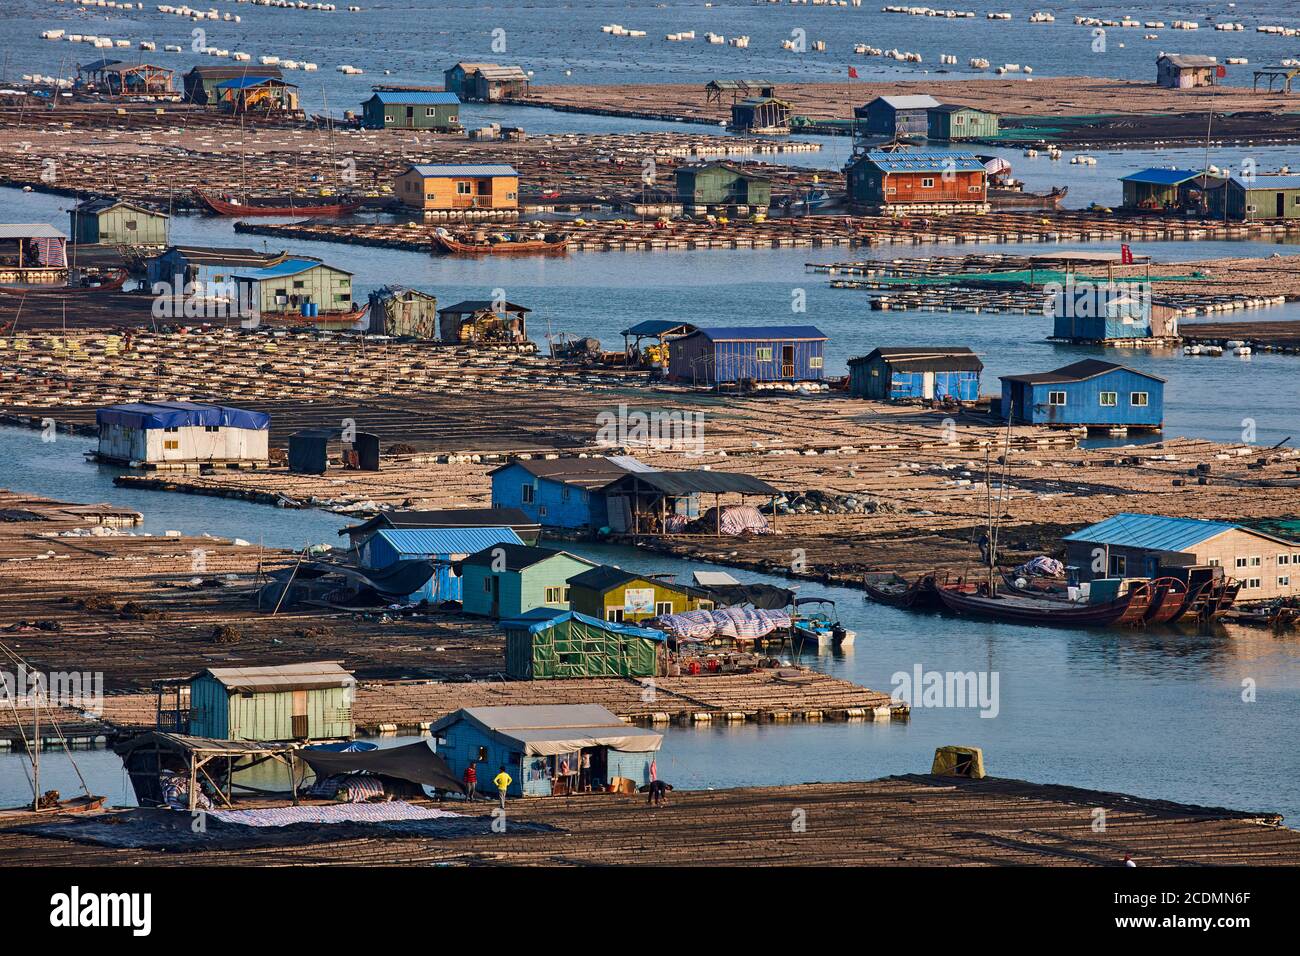 Ville flottante dans la baie, maisons sur des constructions en bambou avec des aquacultures, Xiapu, Chine Banque D'Images